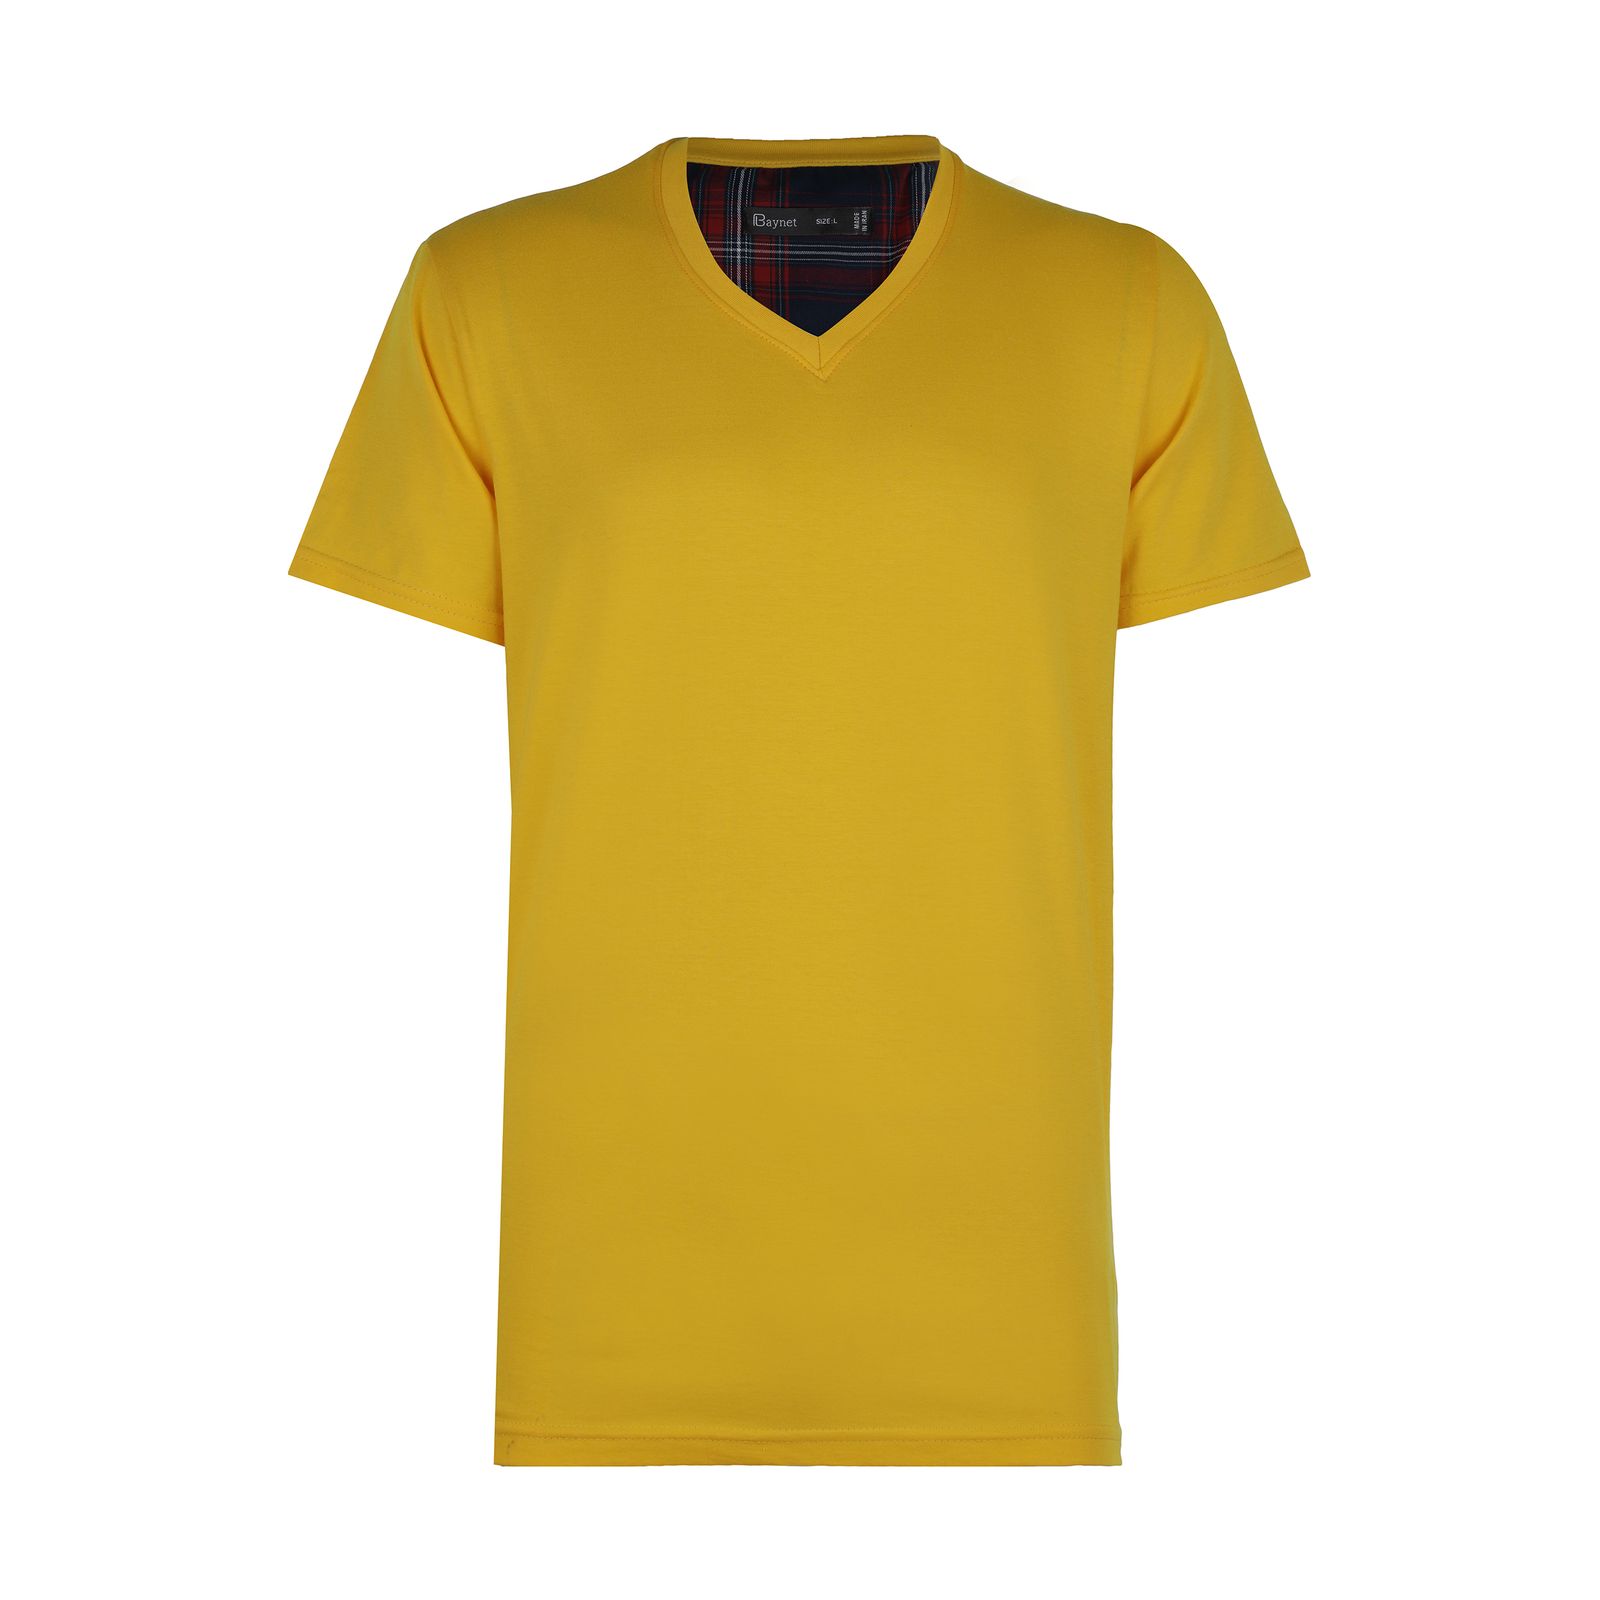 تی شرت مردانه باینت مدل 2261485-16 -  - 1